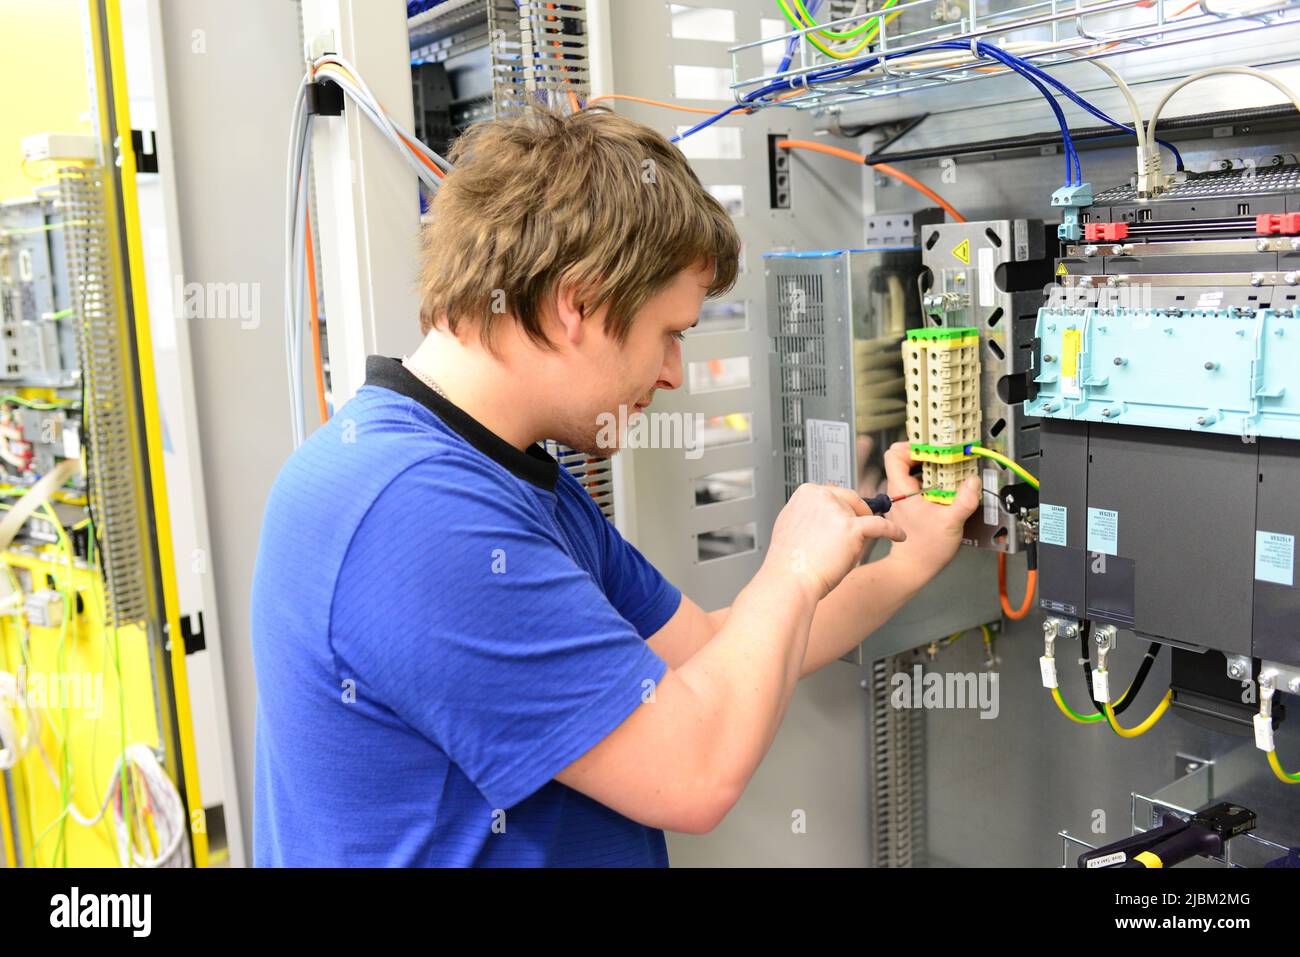 Junge Auszubildende montiert Komponenten und Kabel in einer Fabrik in Ein Schaltschrank - Arbeitswelt mit Zukunft Stockfoto